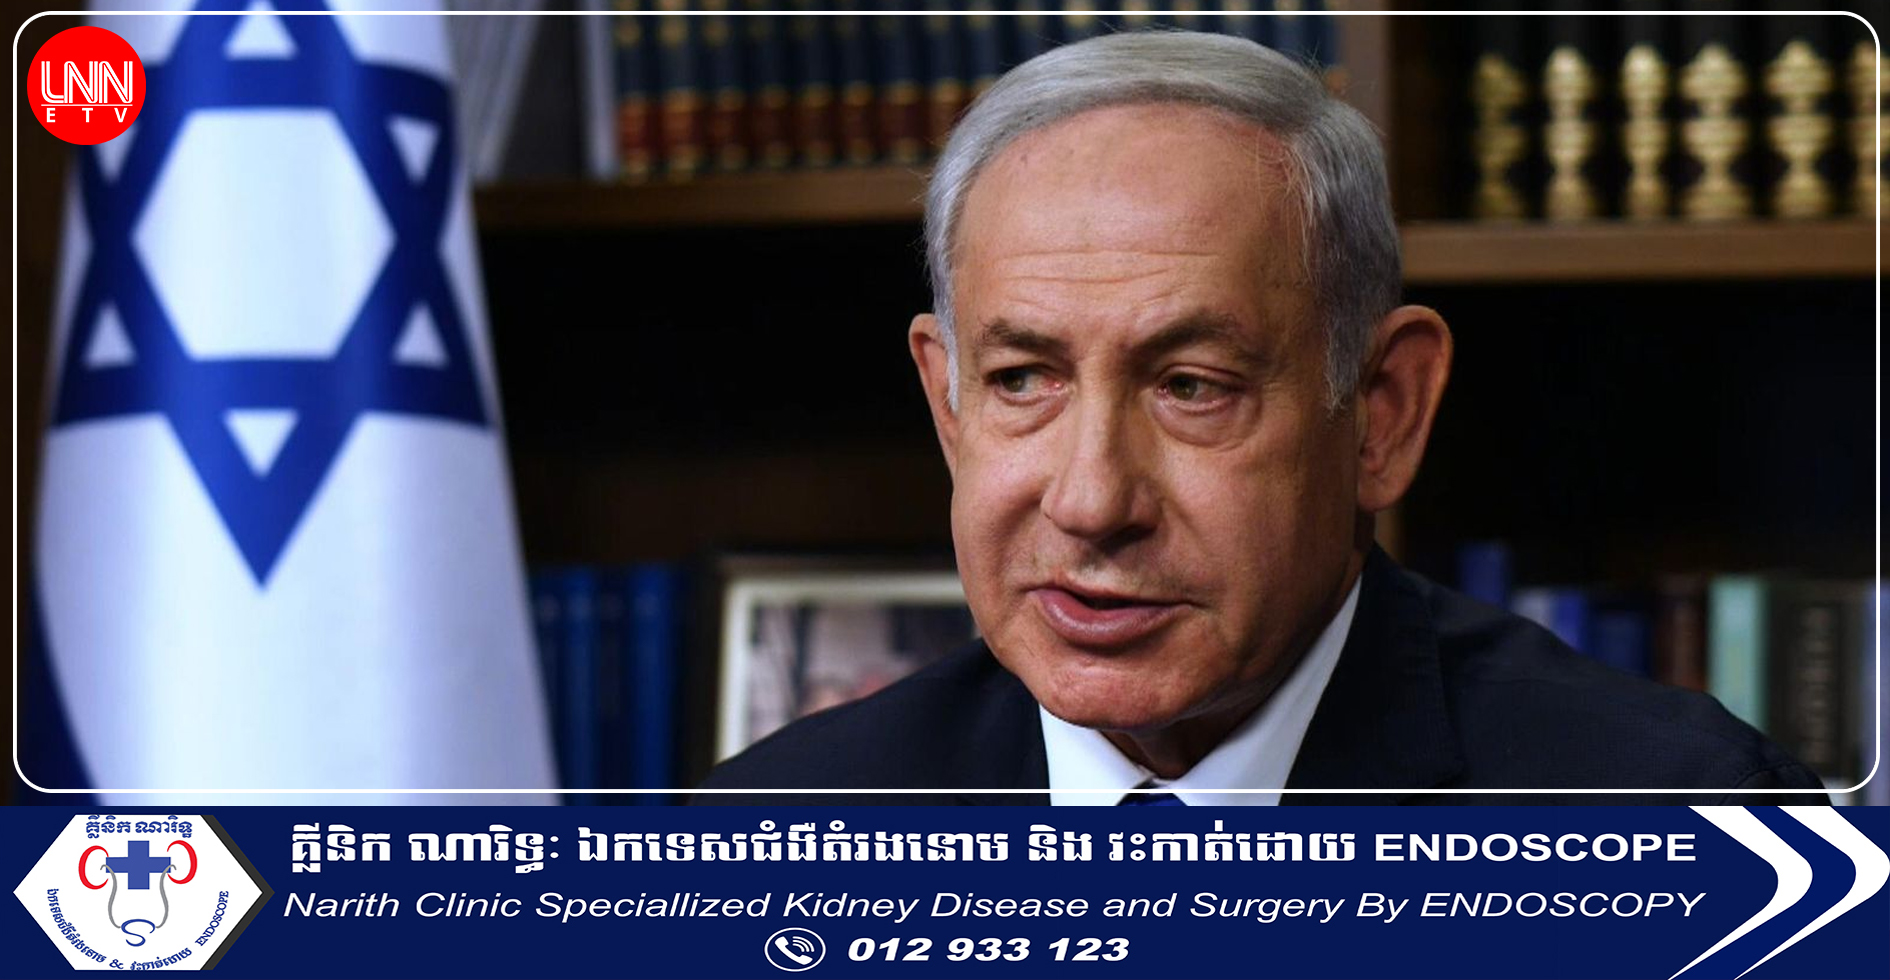 លោកនាយករដ្ឋមន្ត្រី Benjamin Netanyahu ៖ នឹងមិនមានឡើយបទឈប់បាញ់ រហូតទាល់តែចំណាប់ខ្មាំងទាំងអស់ត្រូវបានដោះលែង